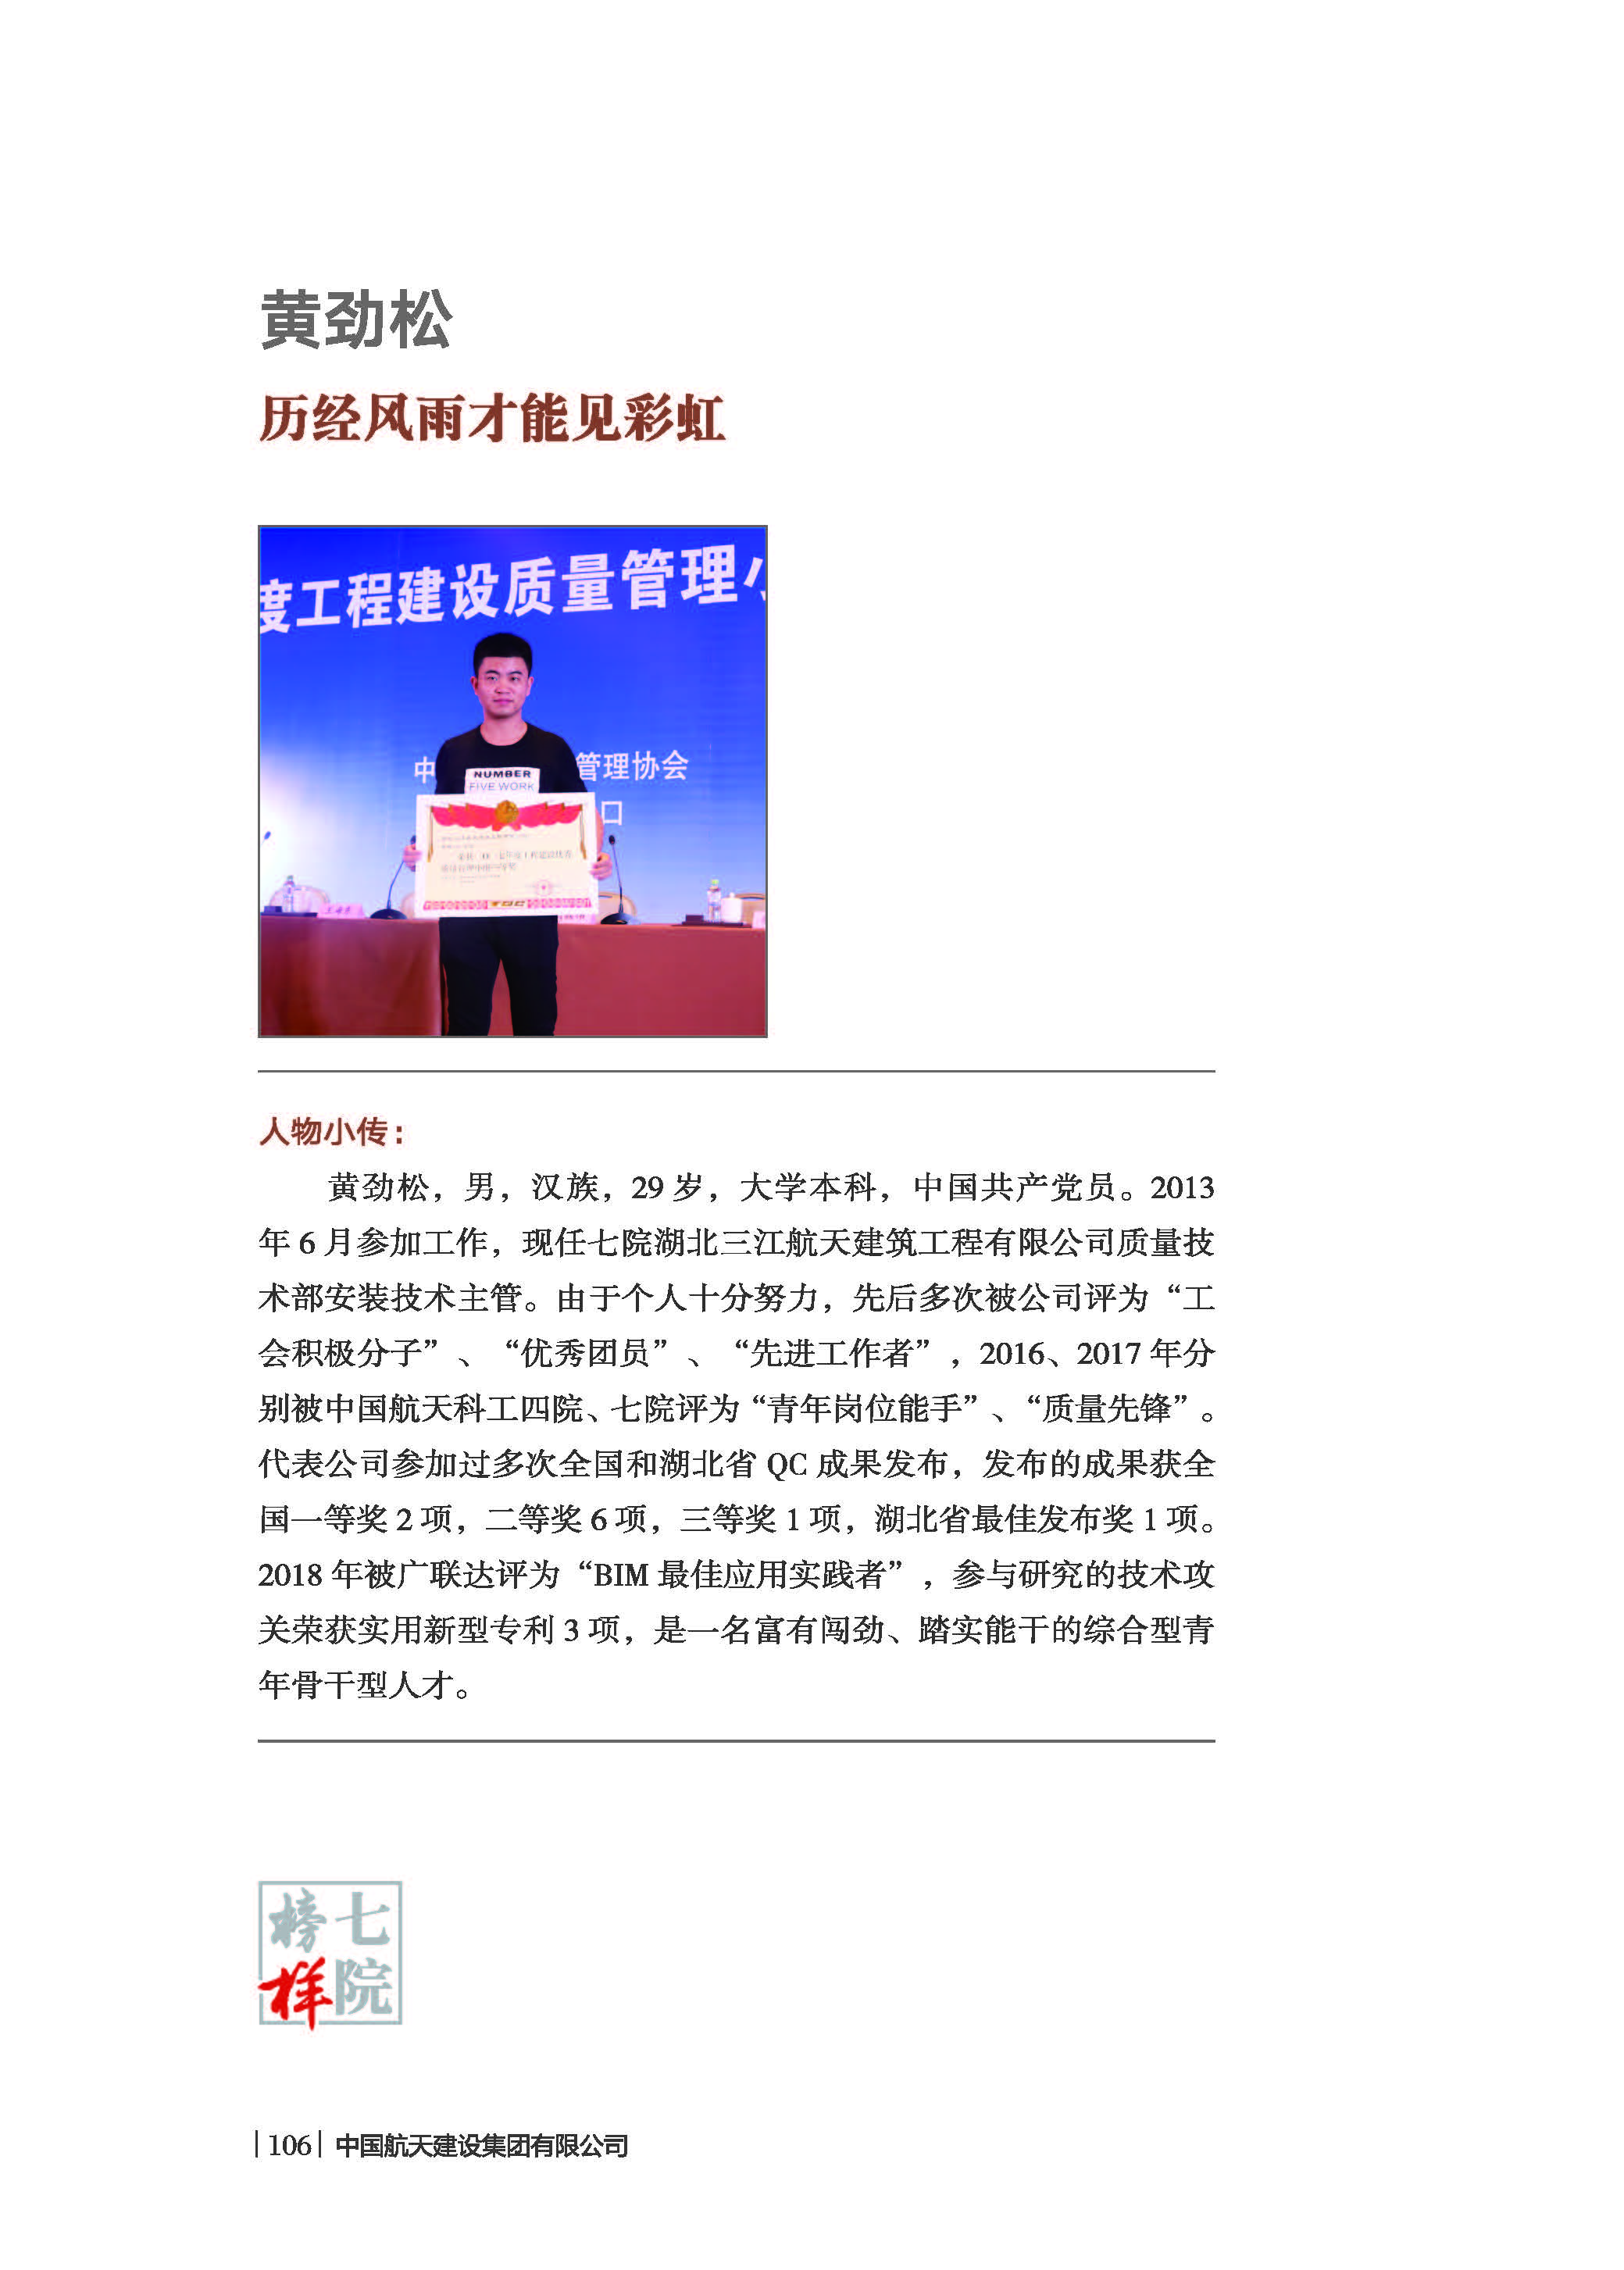 中国航天建设集团有限公司《七院榜样》